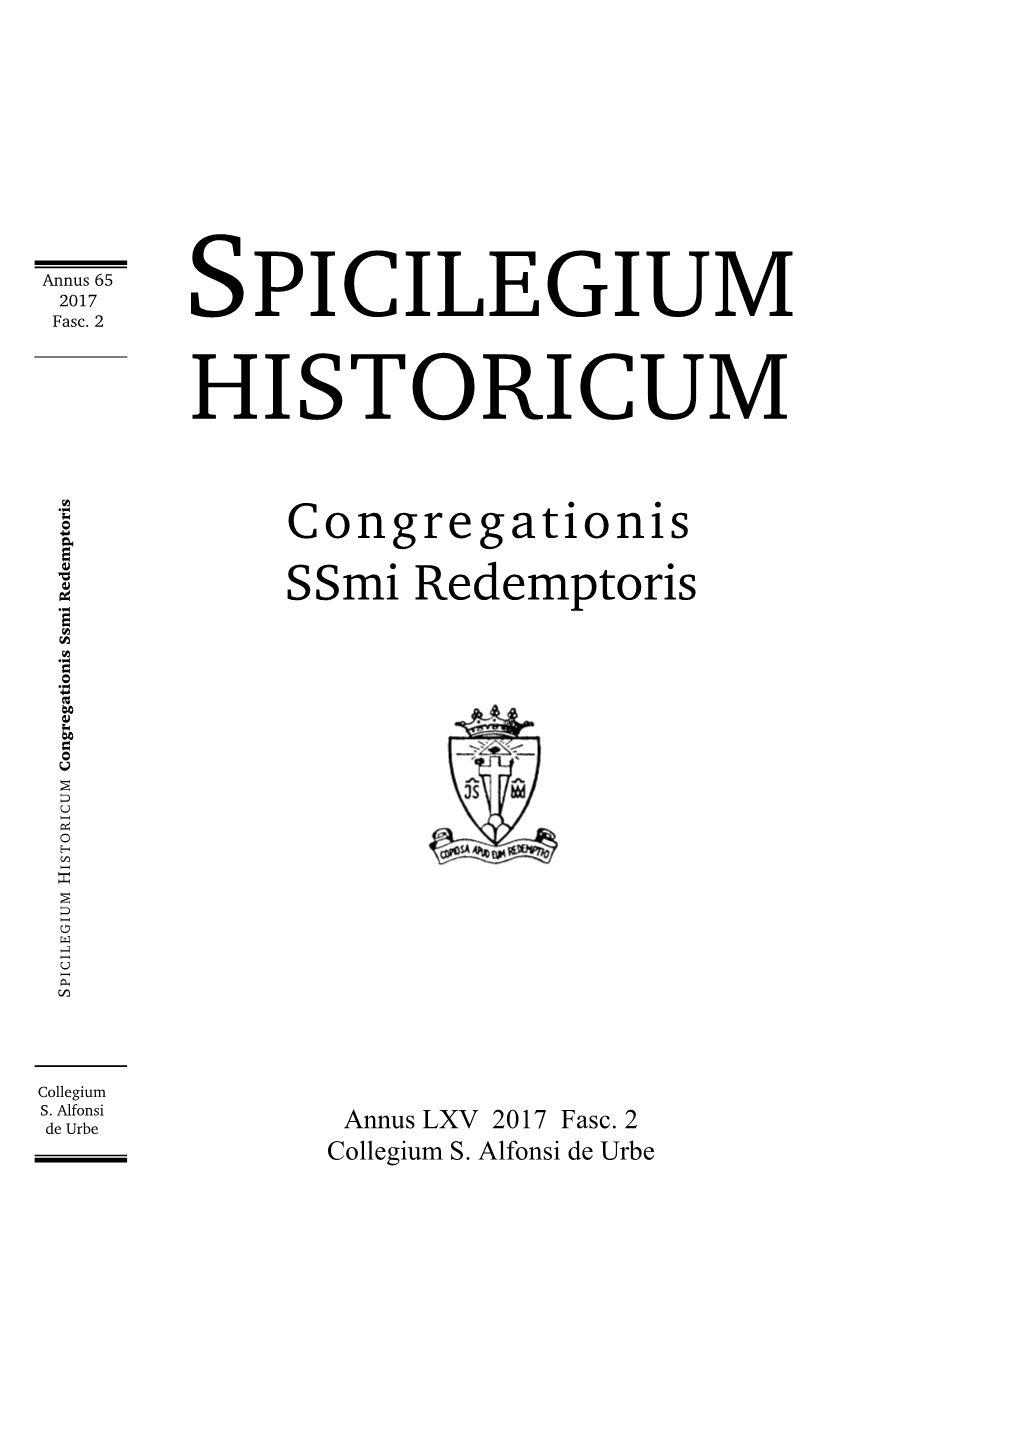 Spicilegium Historicum